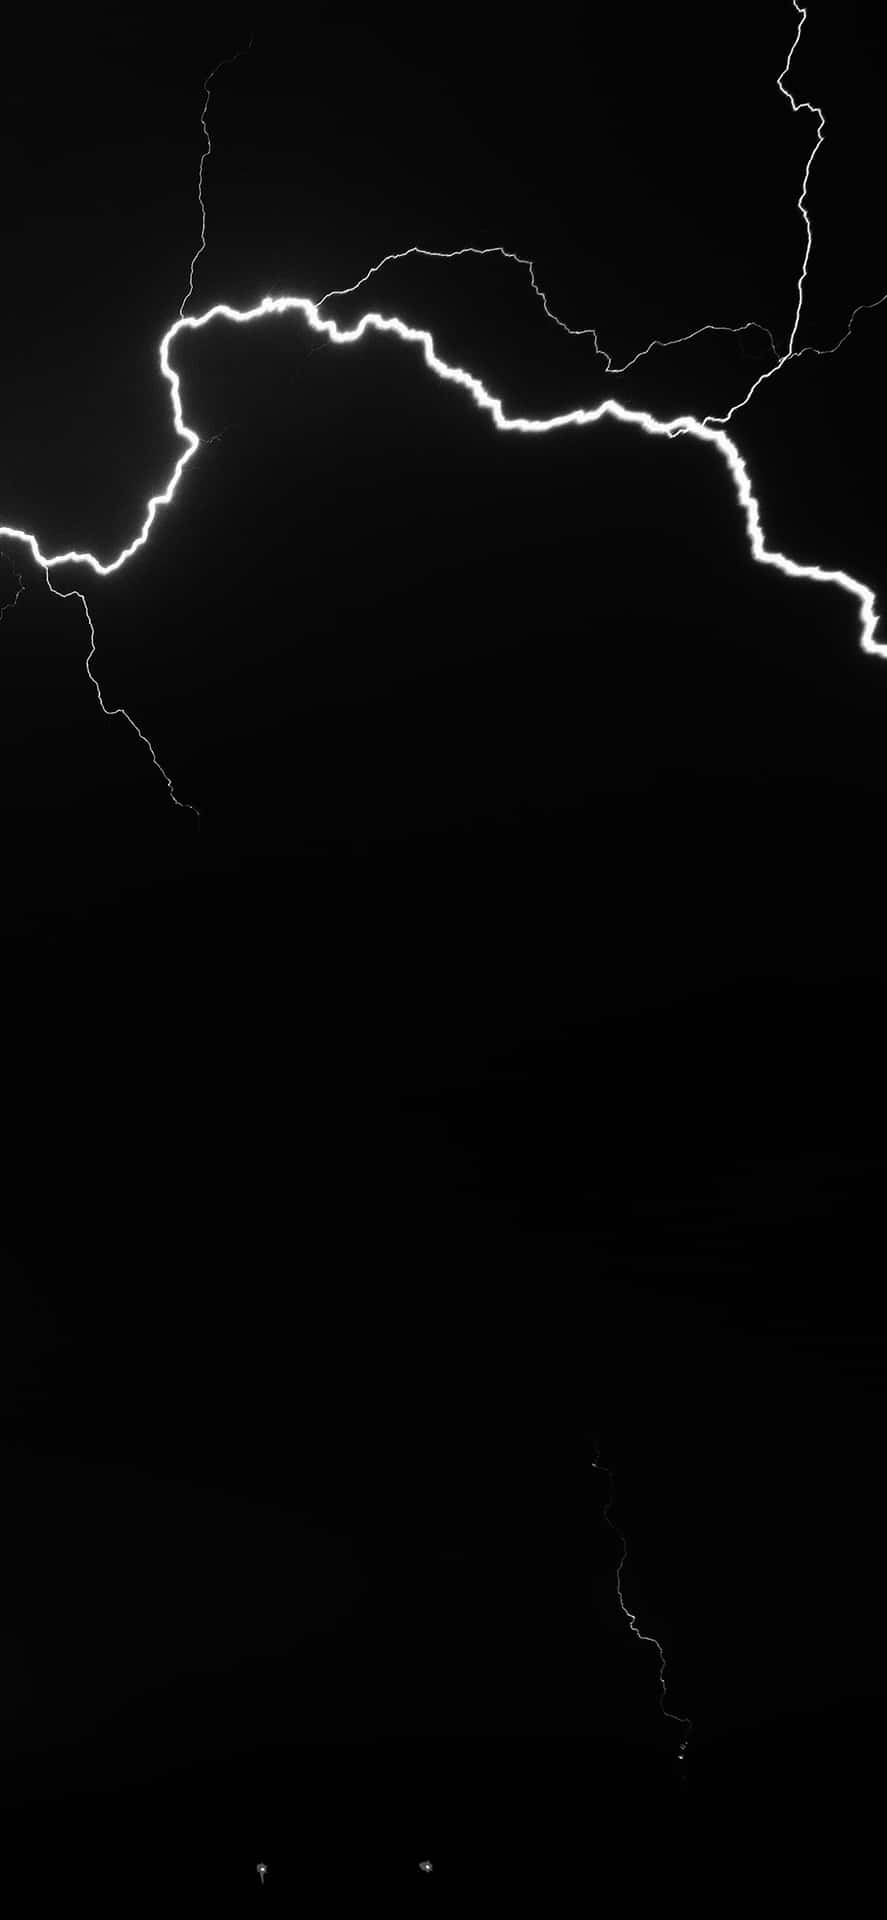 Nighttime Lightning Strike Wallpaper